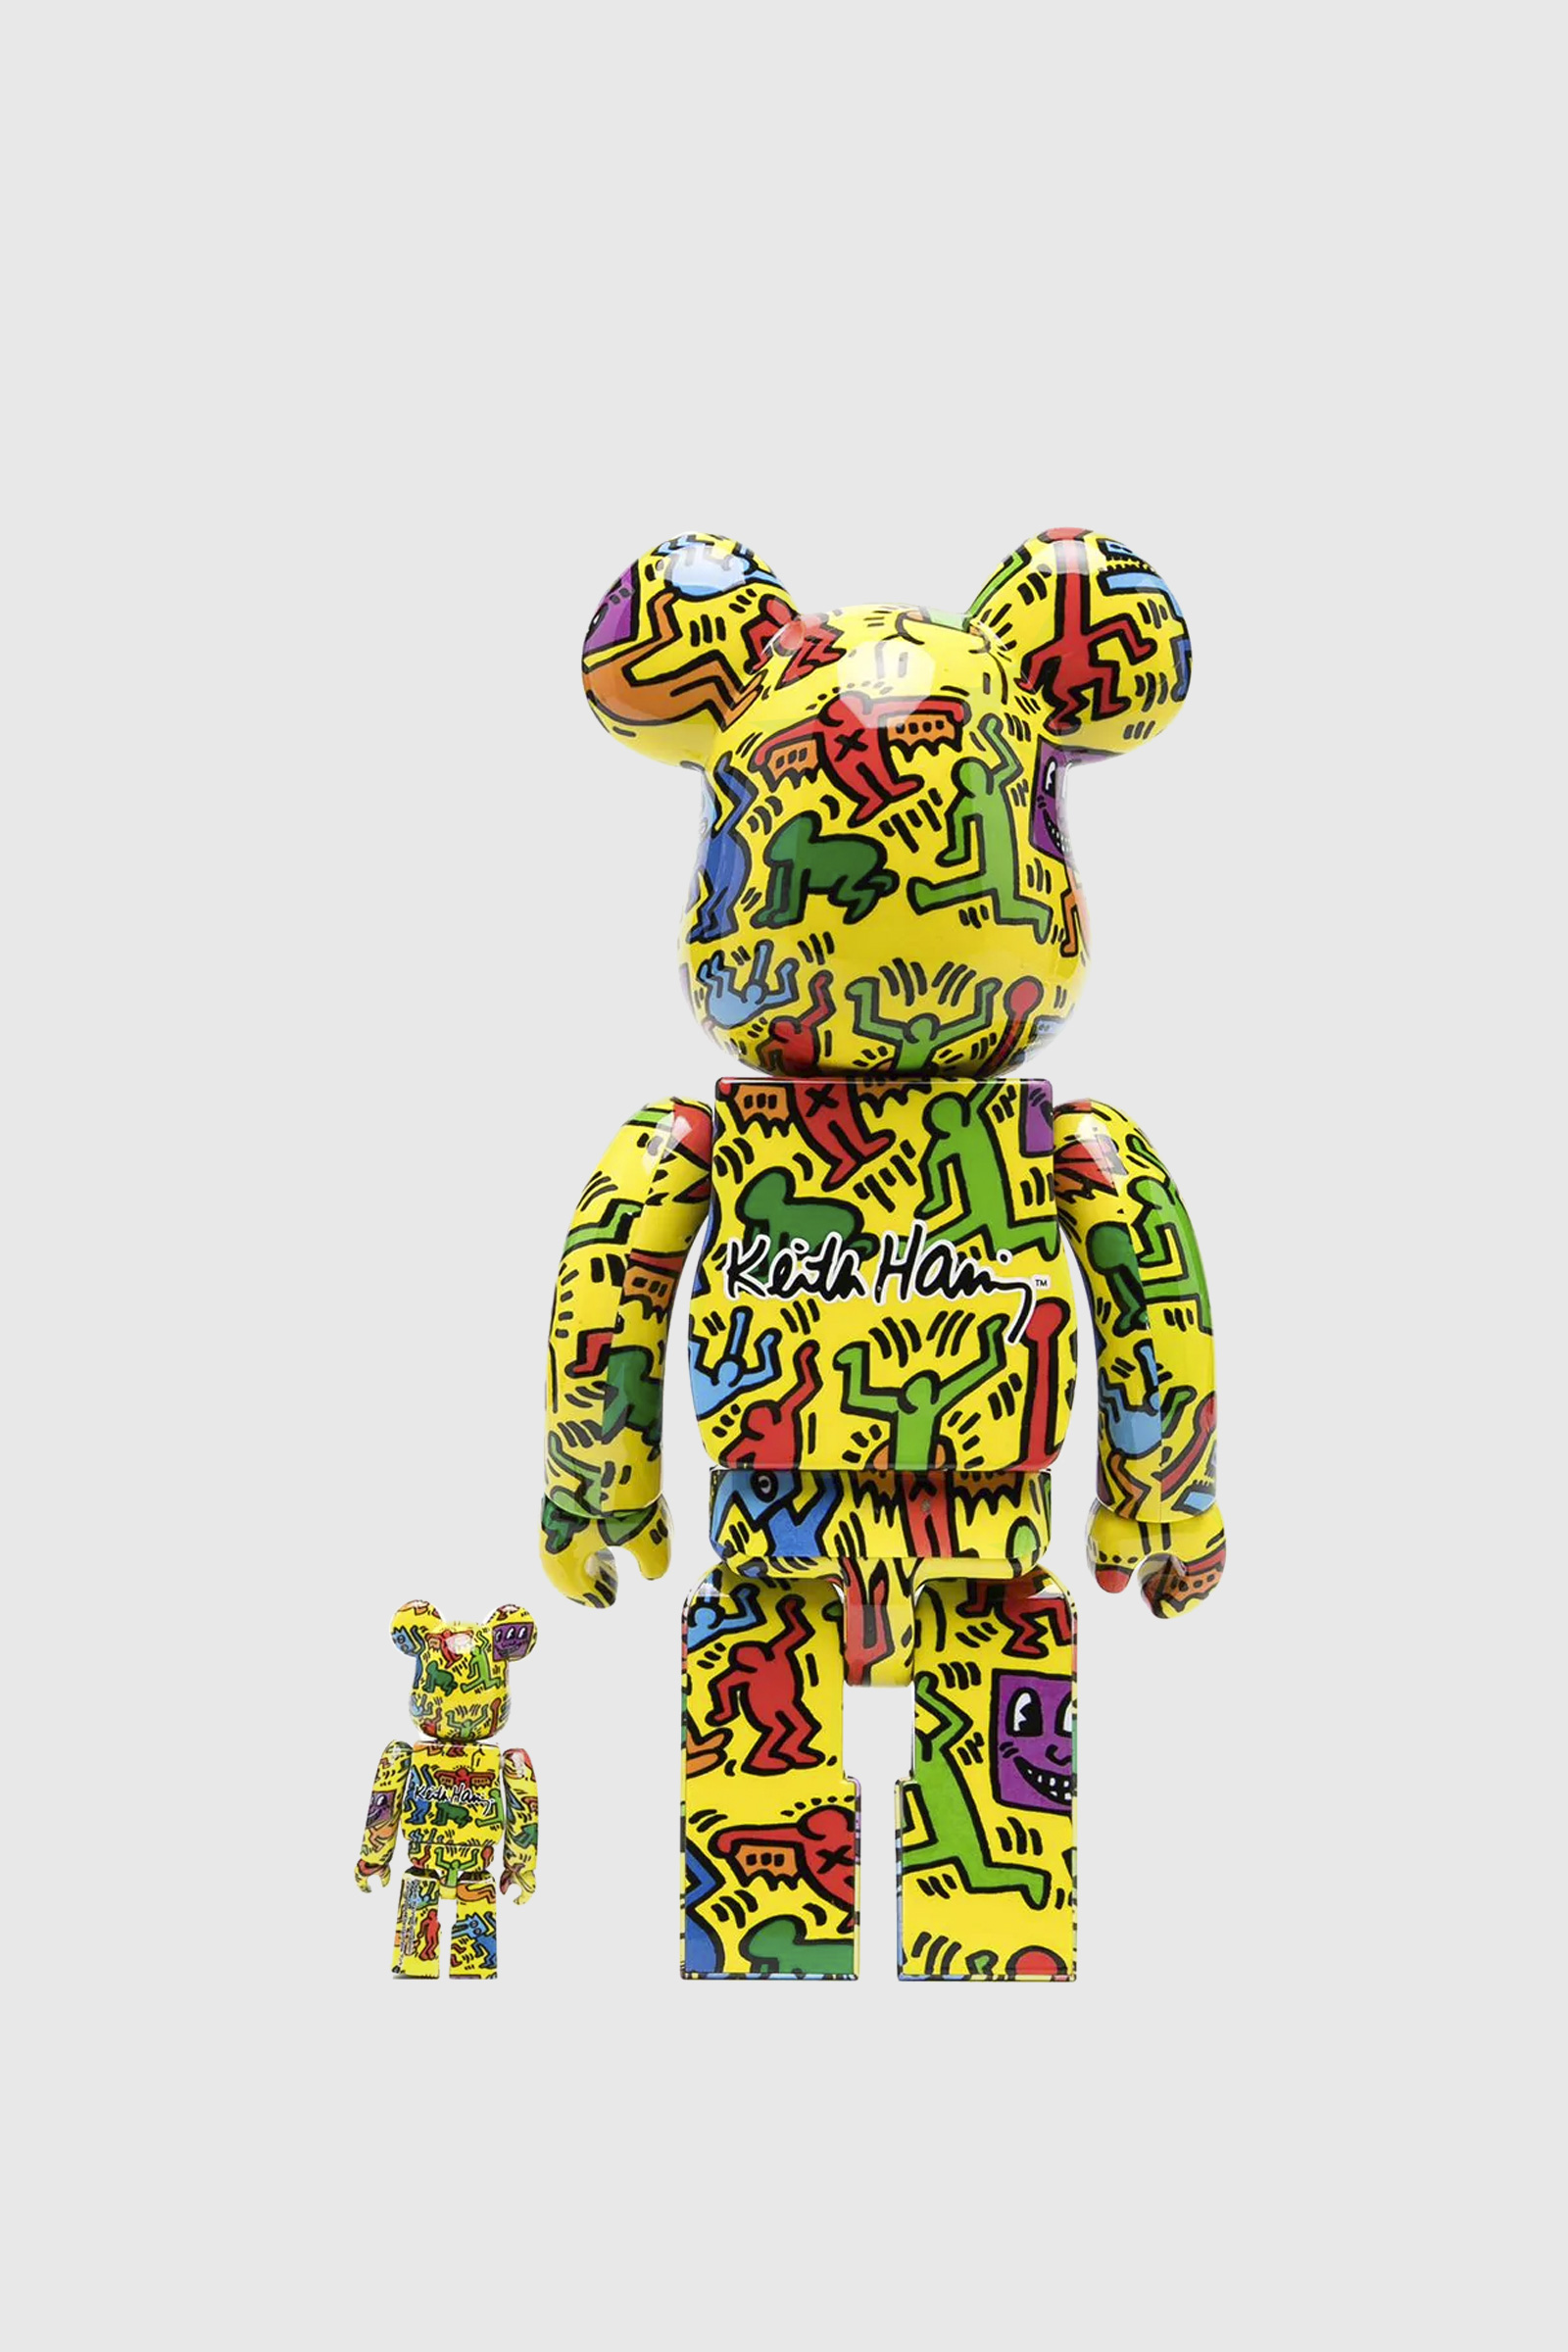 新品?正規品 BE@RBRICK Keith Haring 100% 400% コンプリートセット 8 ...